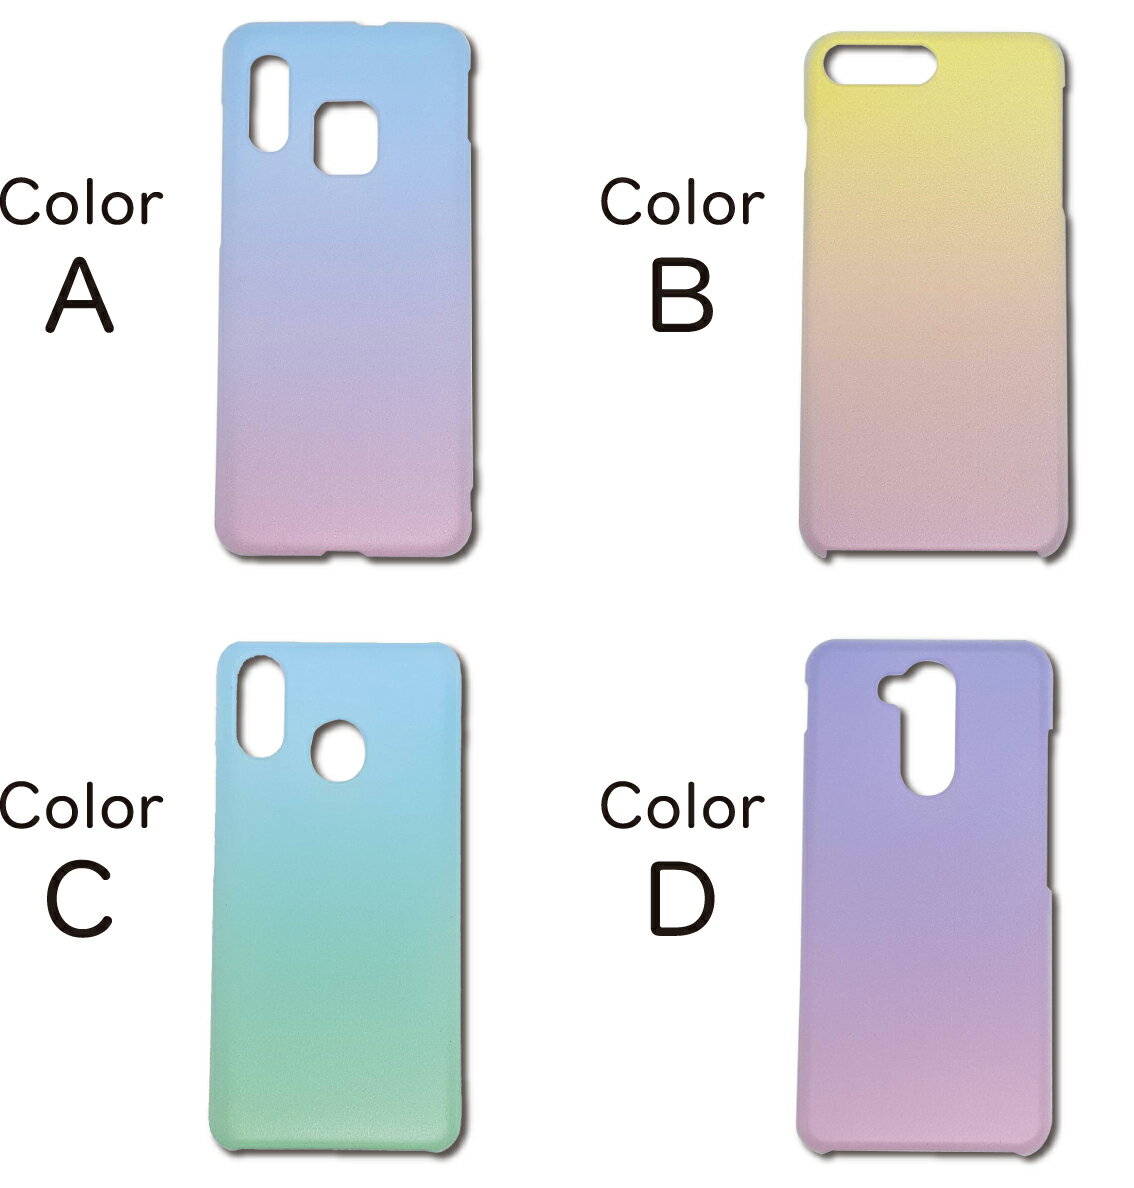 iPhoneX ケース 虹色 カバー 韓国 線画 男性 iPhoneXケース iPhoneXカバー iPhone Xケース iPhone Xカバー アイフォン かわいい 透明 おしゃれ 全機種対応